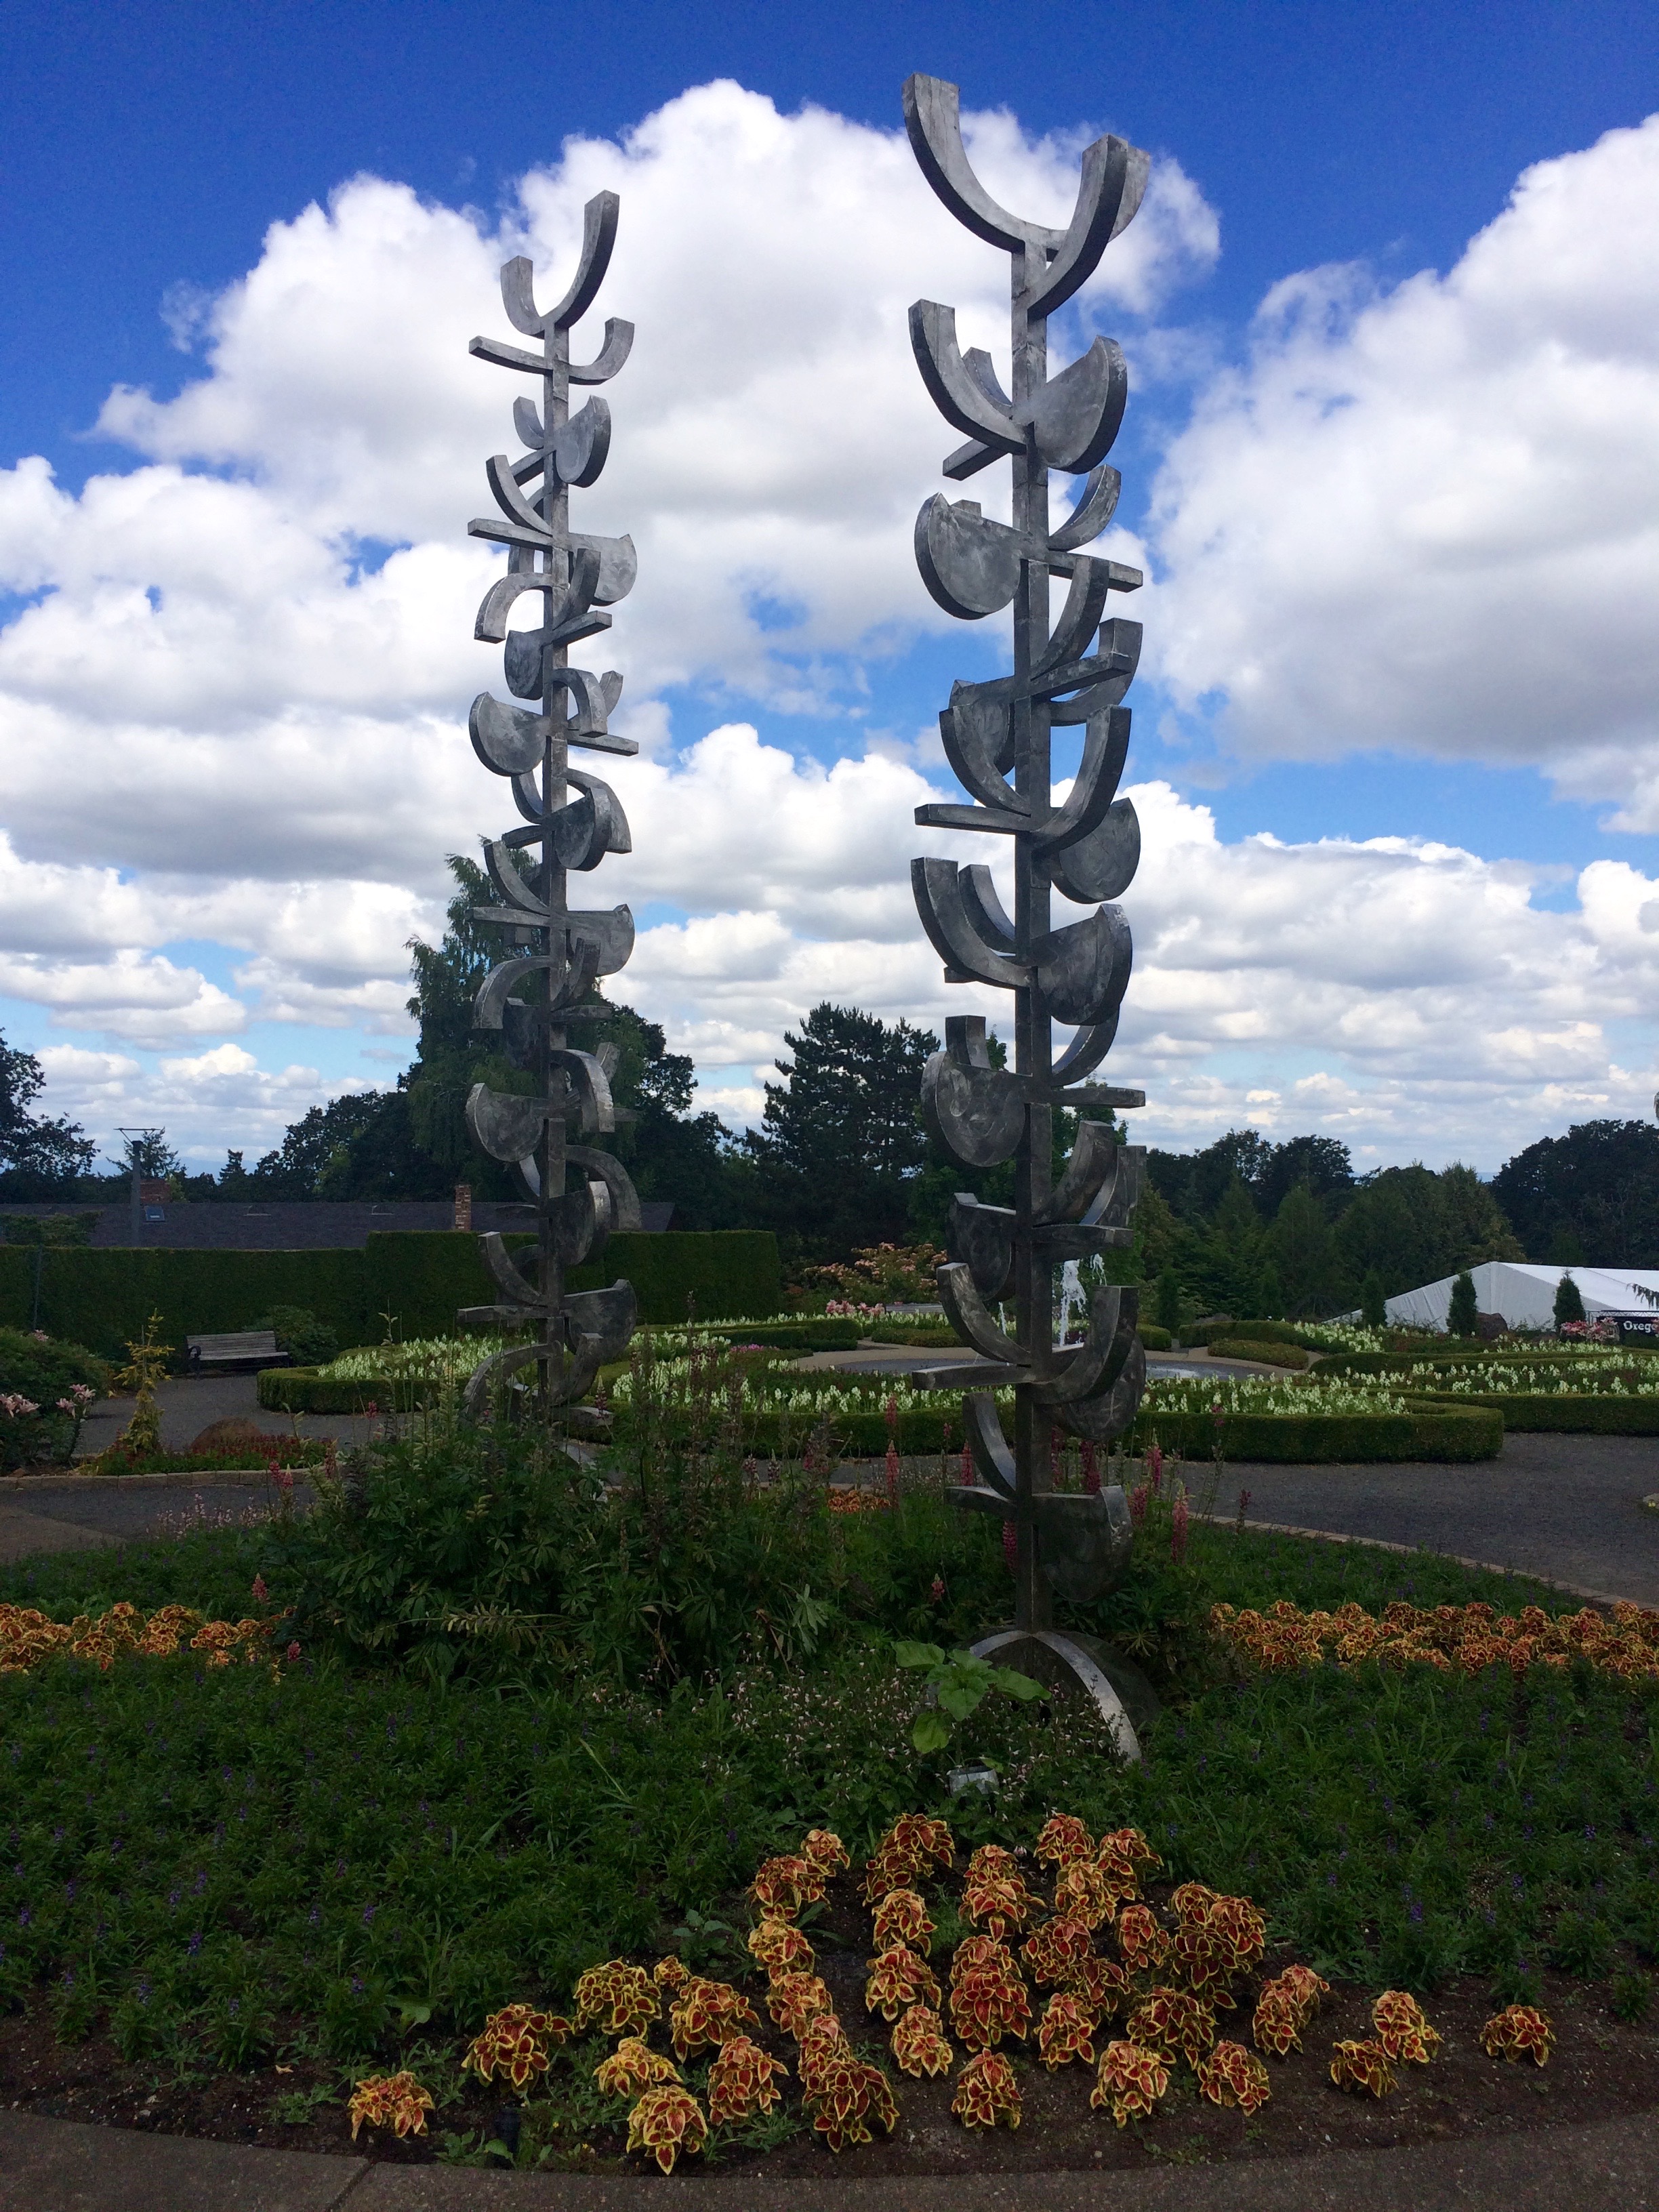 Sculpture at The Oregon Garden